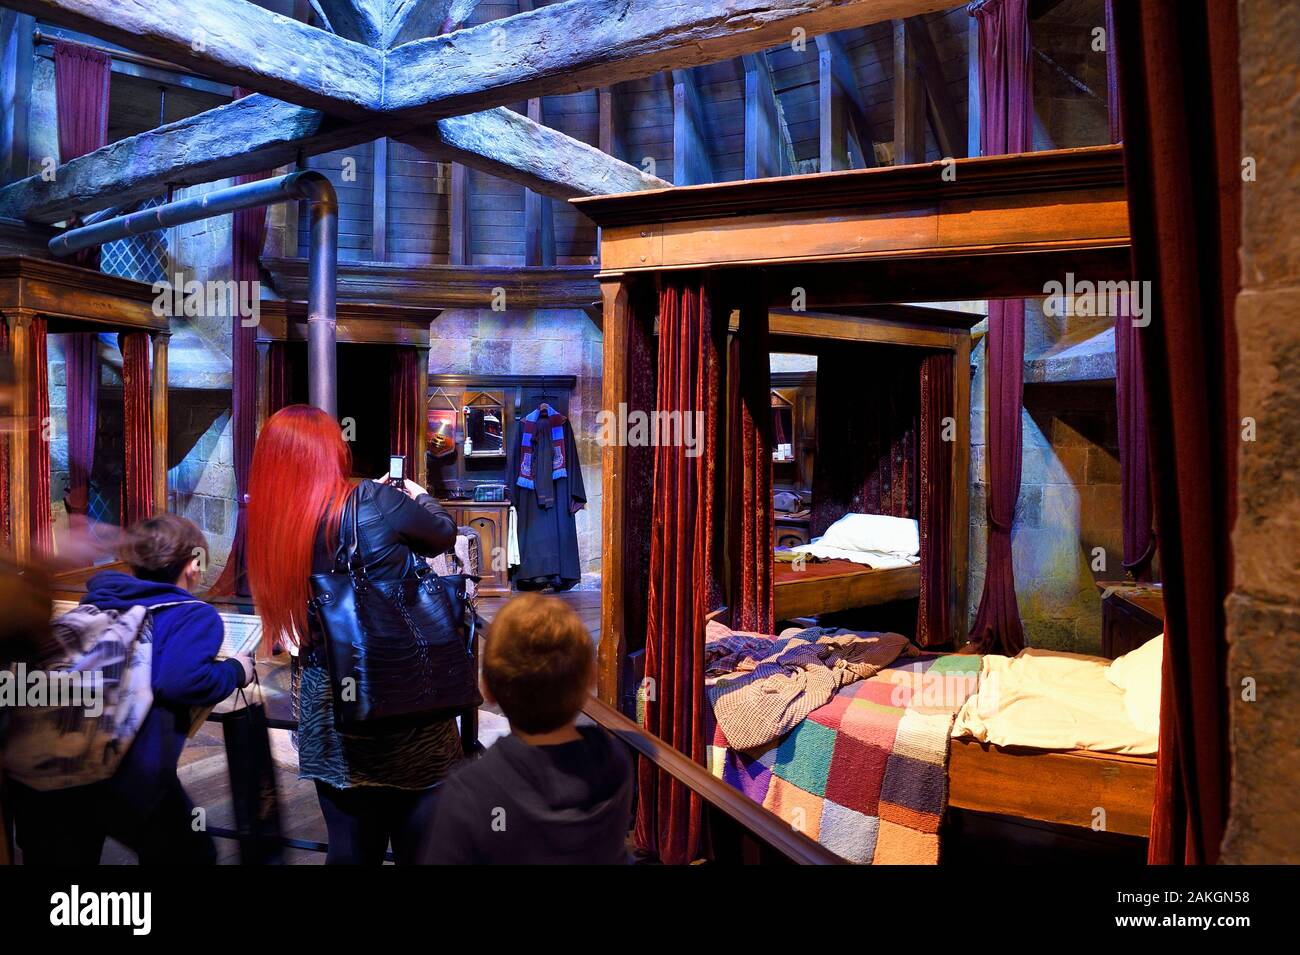 Royaume-uni, Hertfordshire, Leavesden studios de Leavesden, film, Harry Potter Studio Tour London, la scène des huit films de Harry Potter' making of, dortoir des garçons à l'École de Hogwarts Banque D'Images